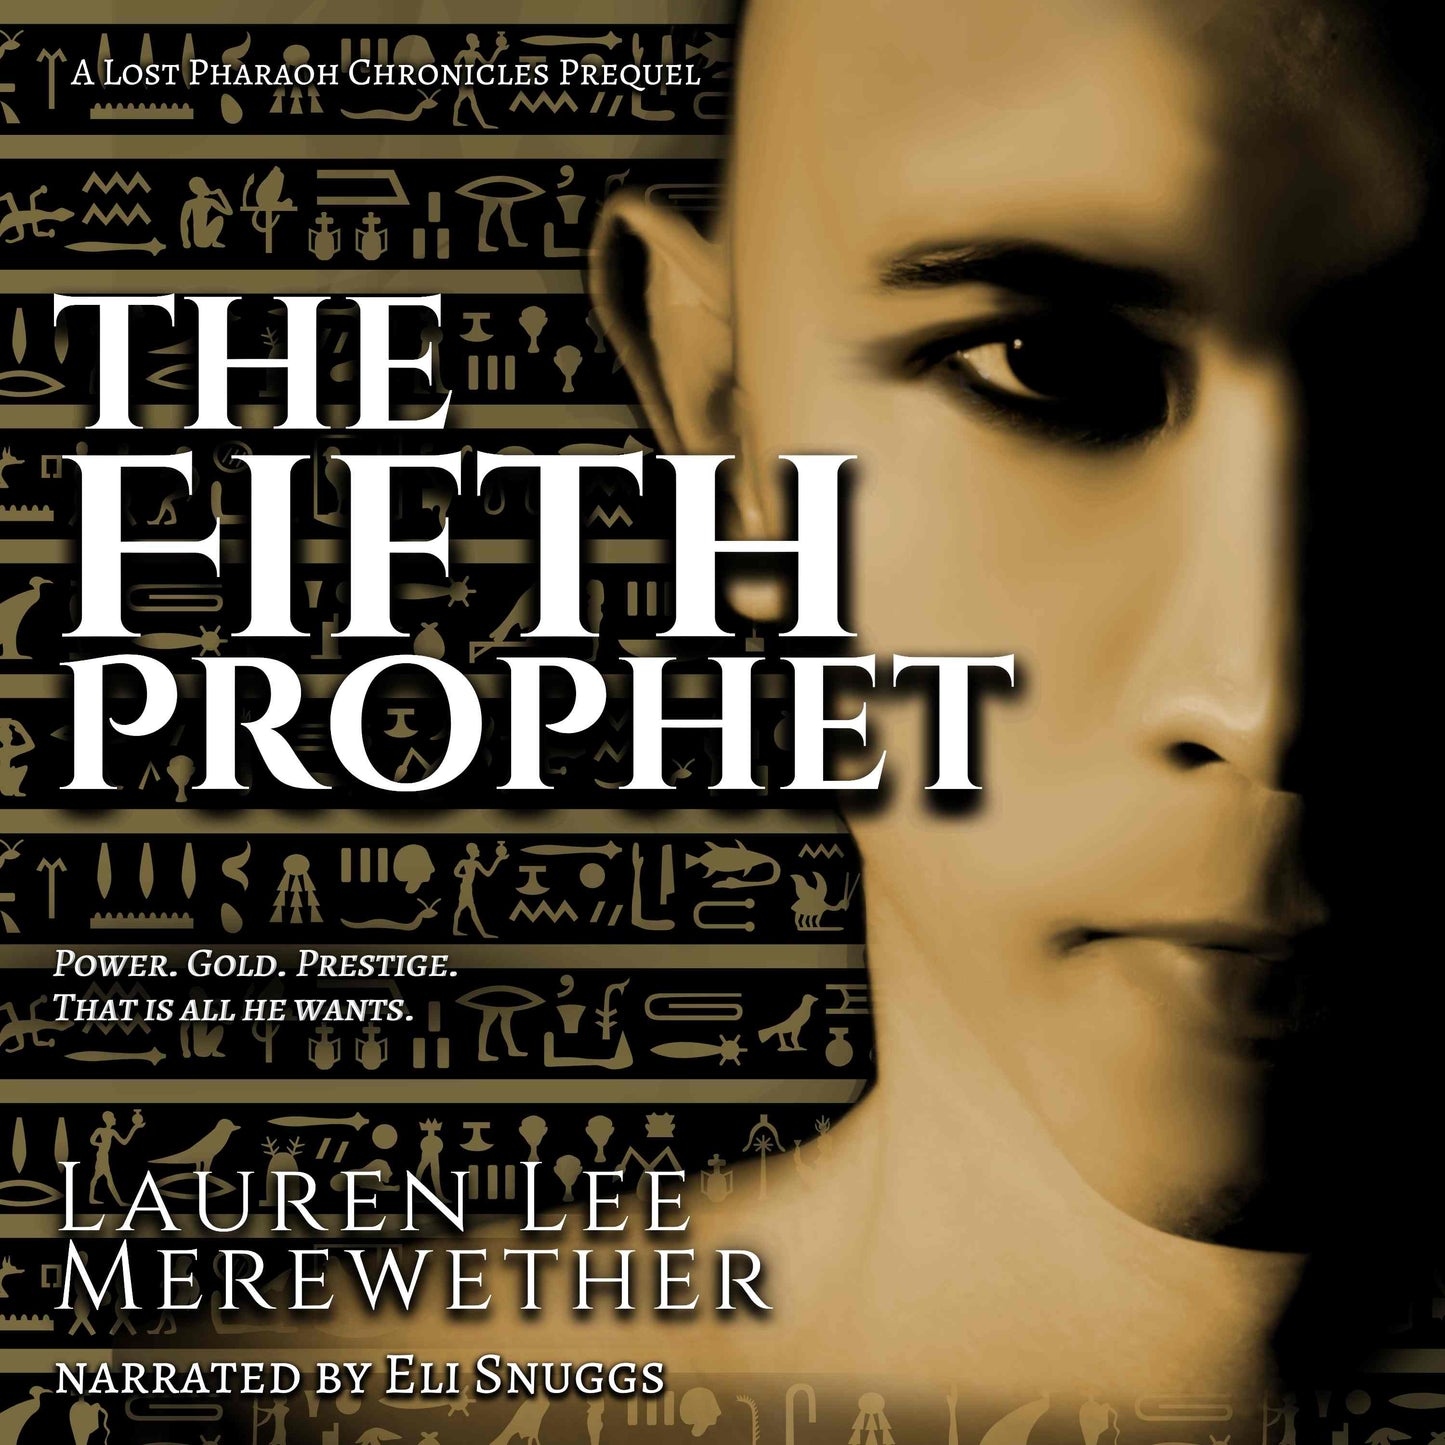 The Fifth Prophet